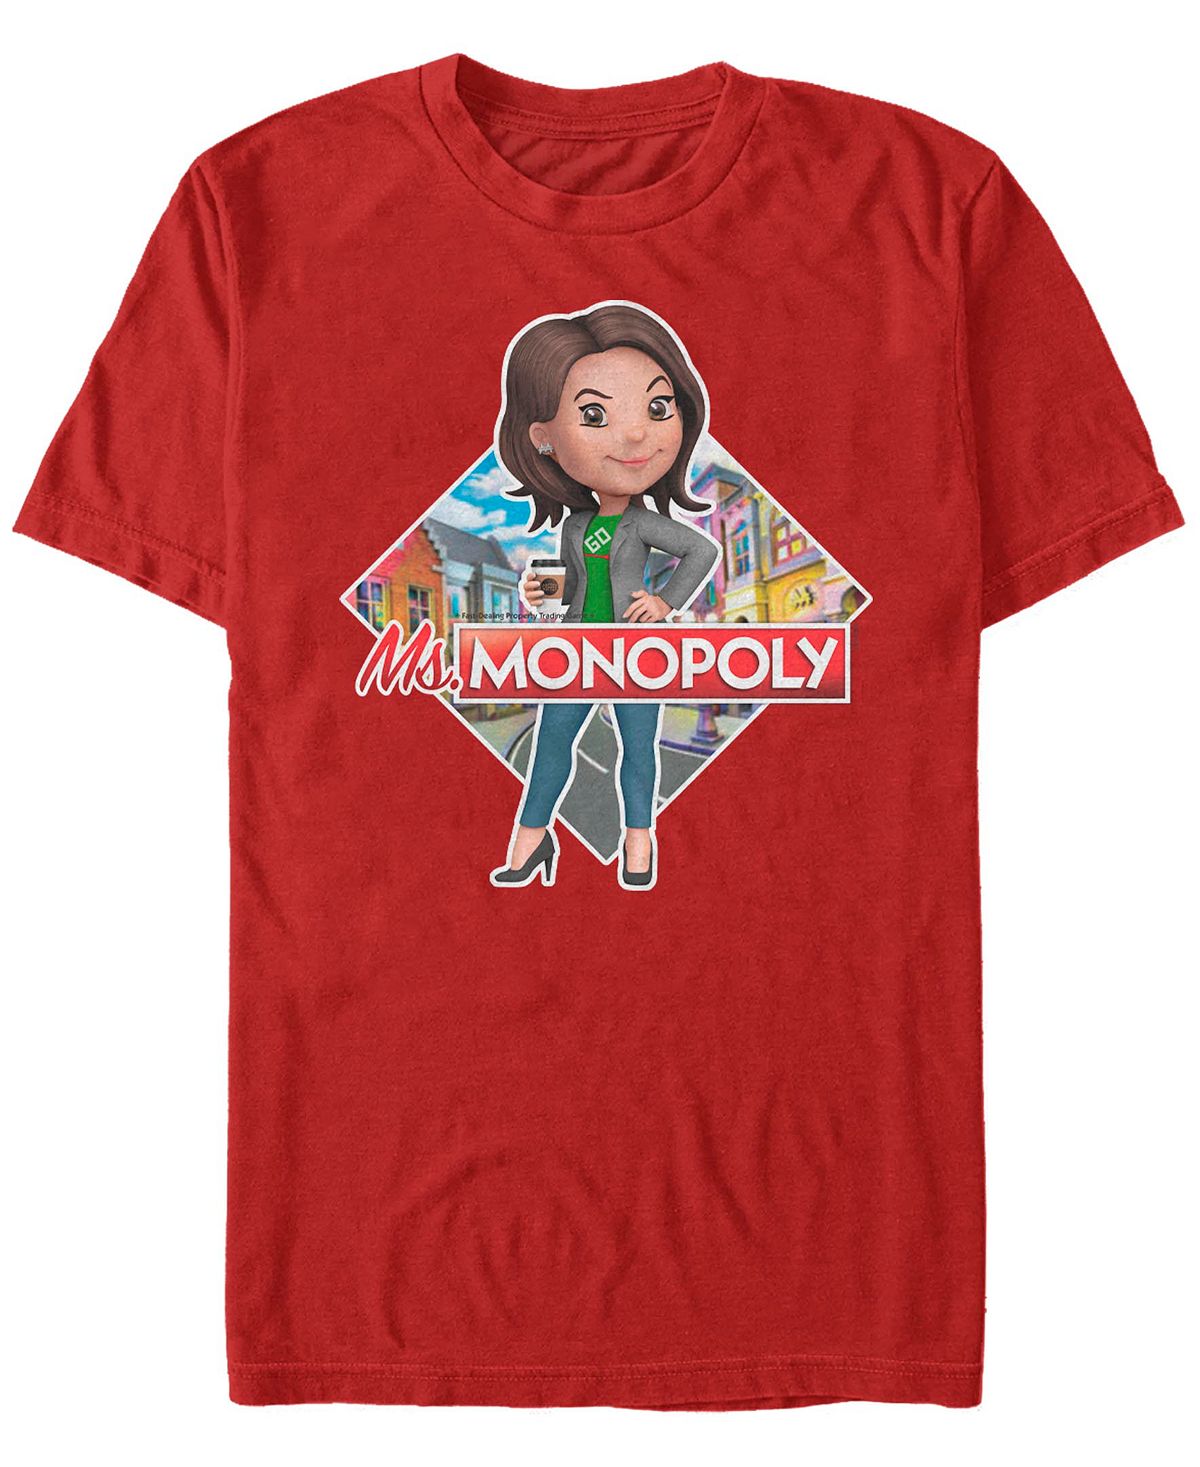 Мужская футболка с коротким рукавом с логотипом monopoly ms monopoly Fifth Sun, красный